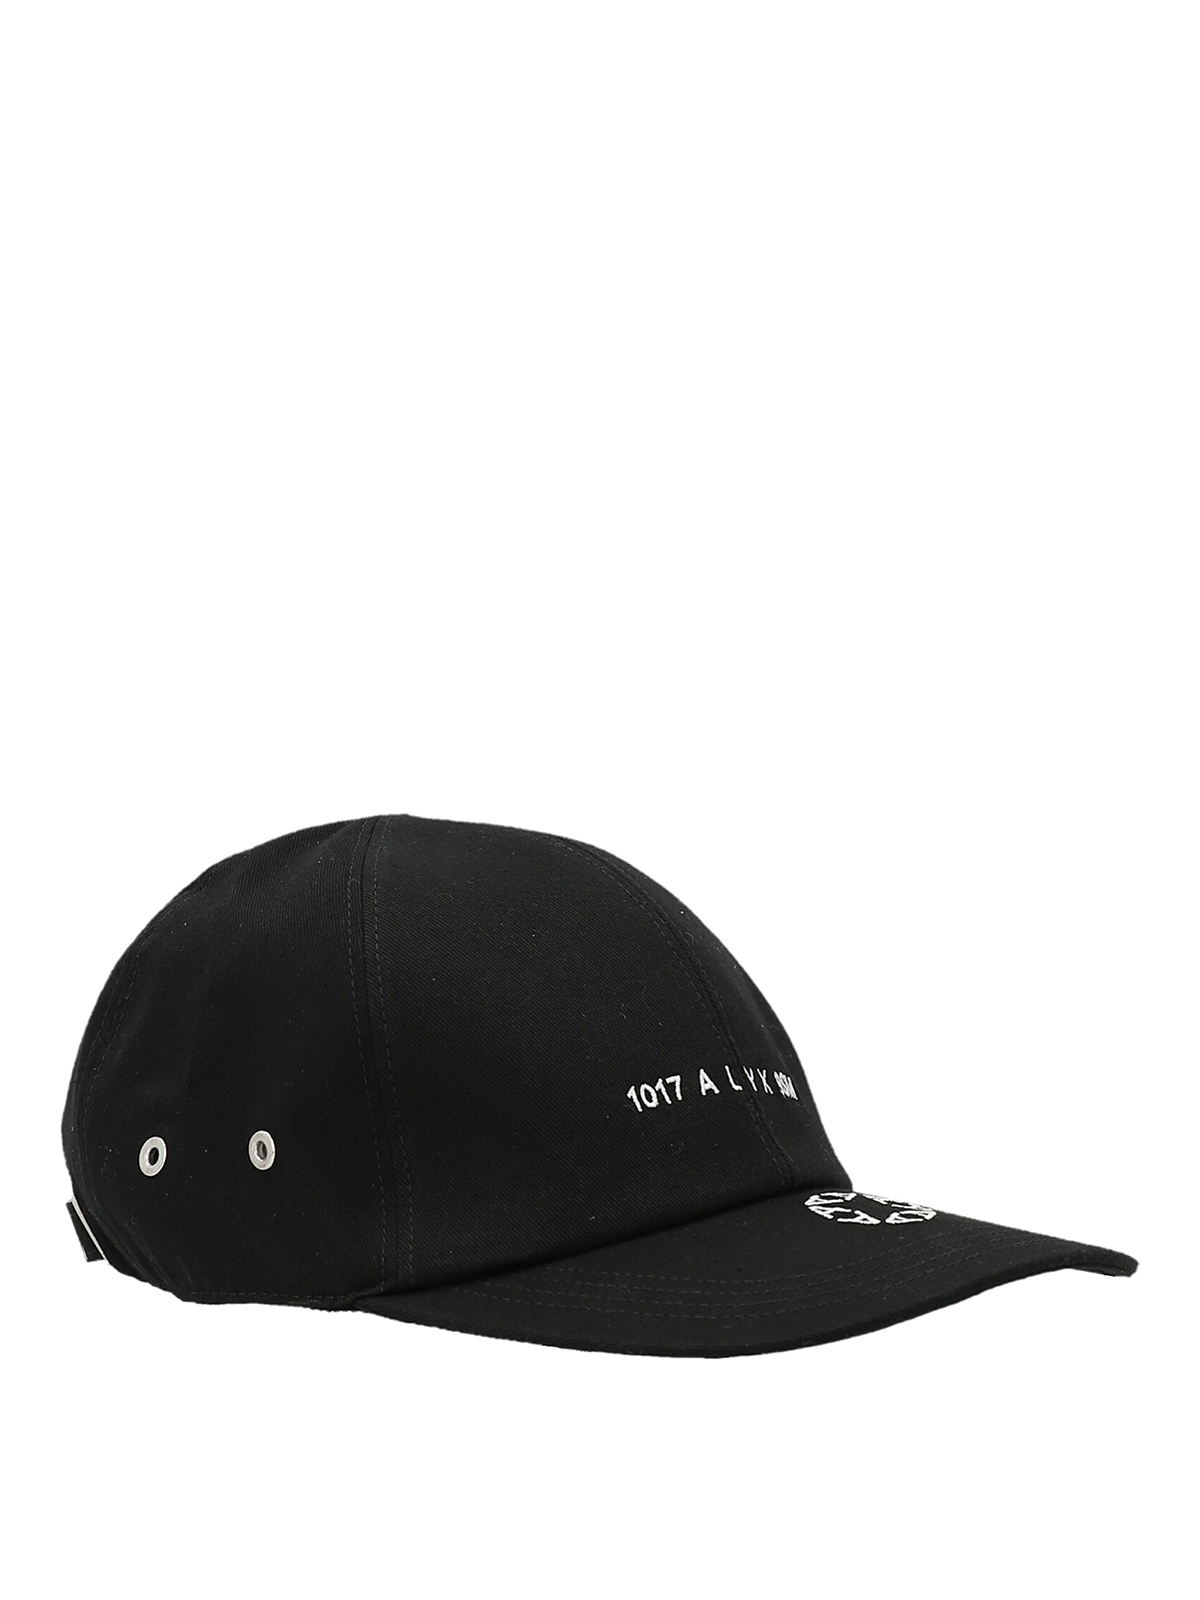 Hats & caps 1017 Alyx 9sm - Logo cap - AAUHA0060FA03BLK0001 | iKRIX.com